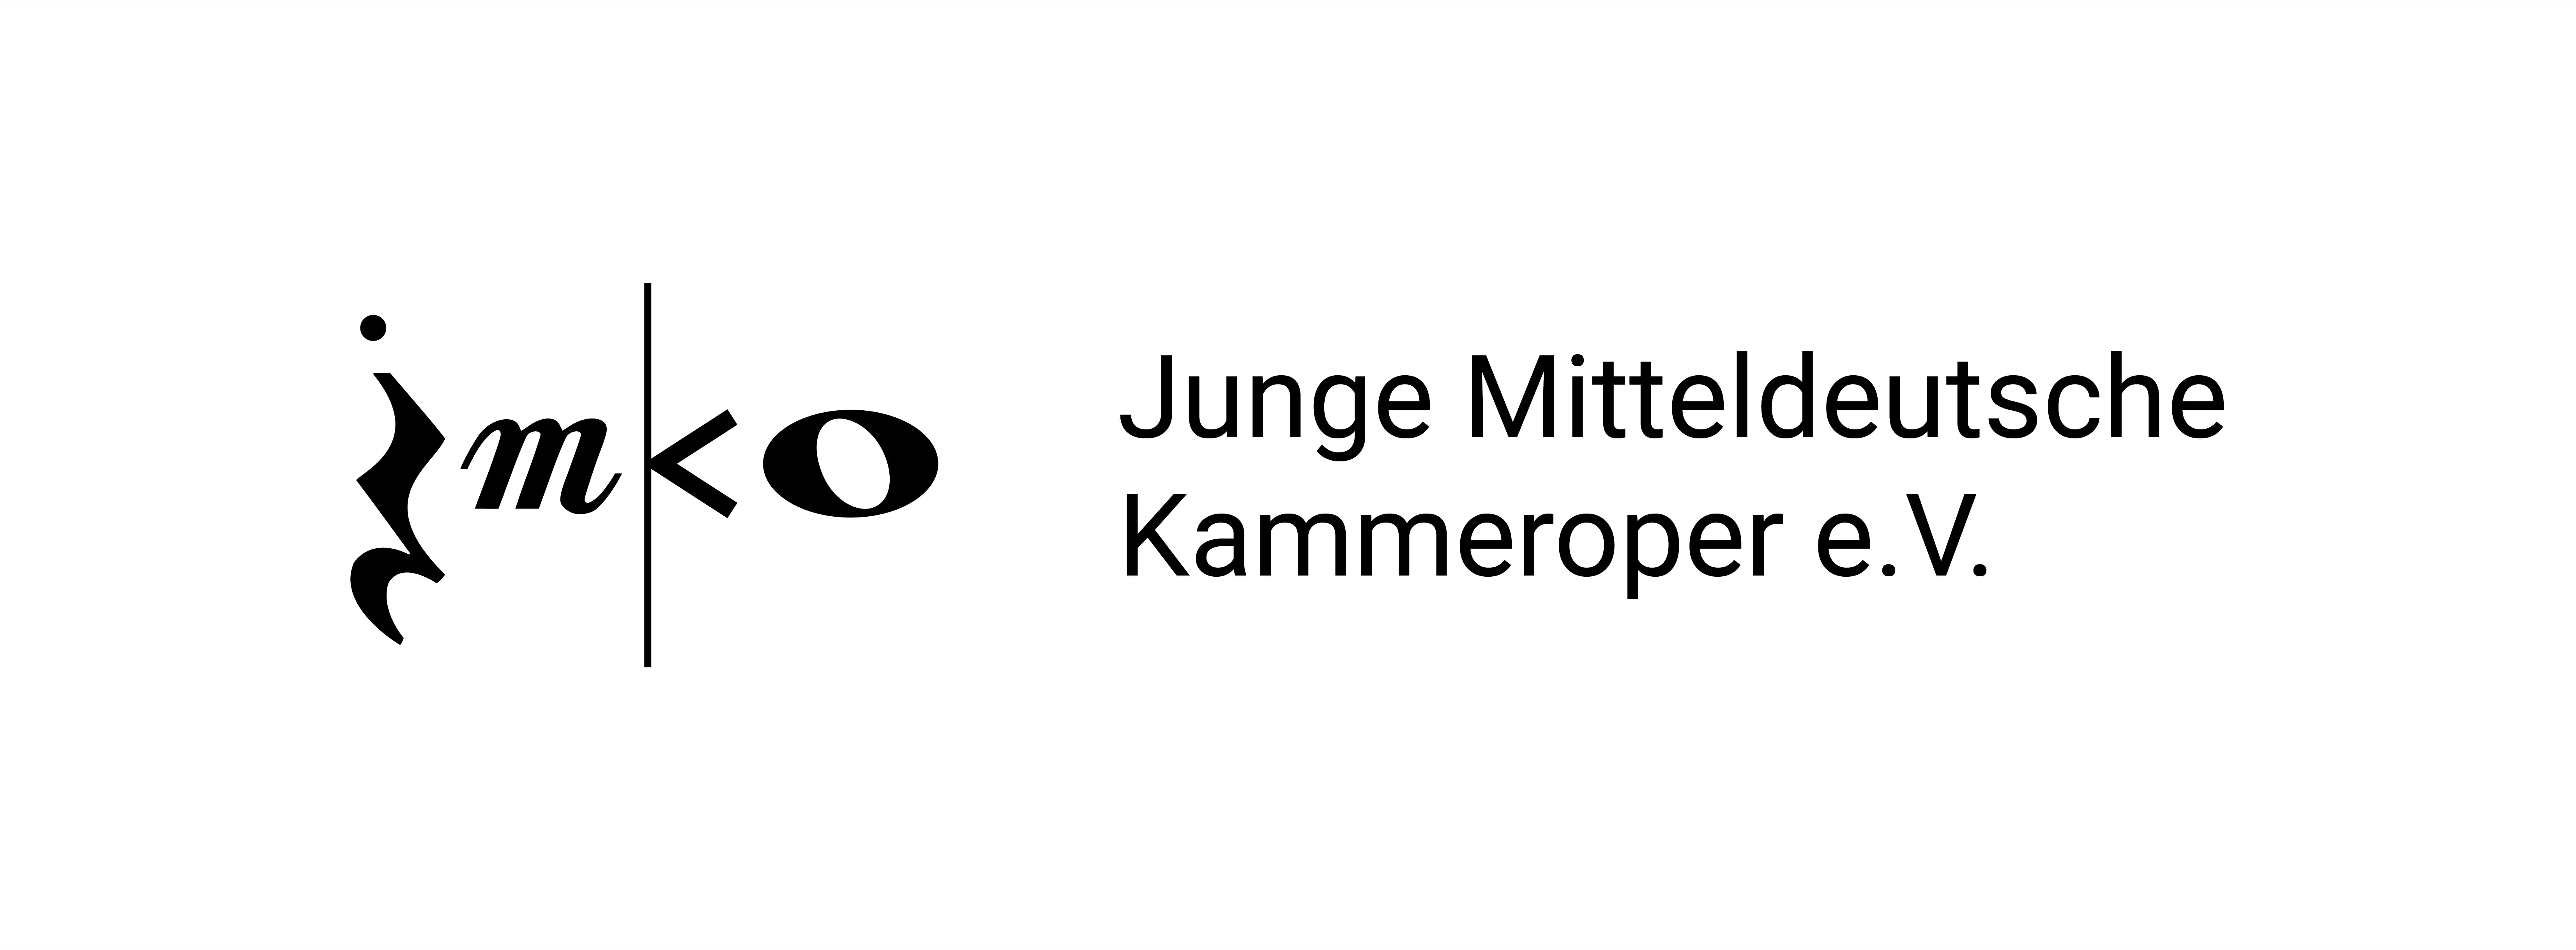 Logo (long version) of Junge Mitteldeutsche Kammeroper by Conrad Dreyer